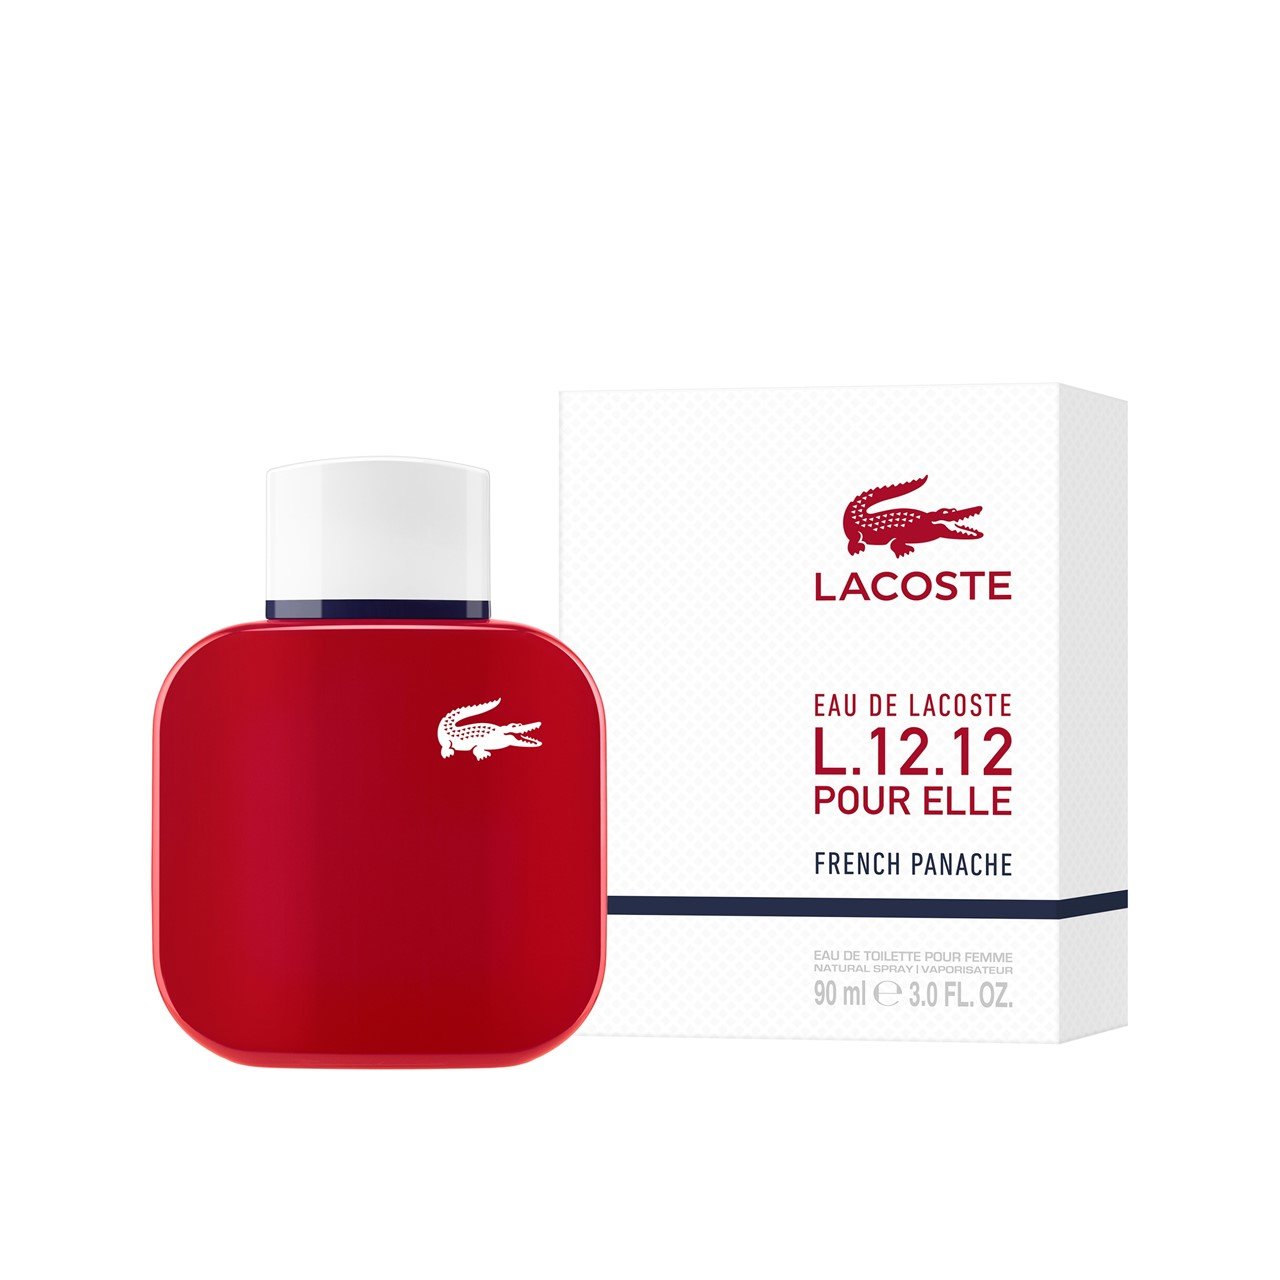 Lacoste L.12.12 Pour Elle French Panache Eau de Toilette 90ml